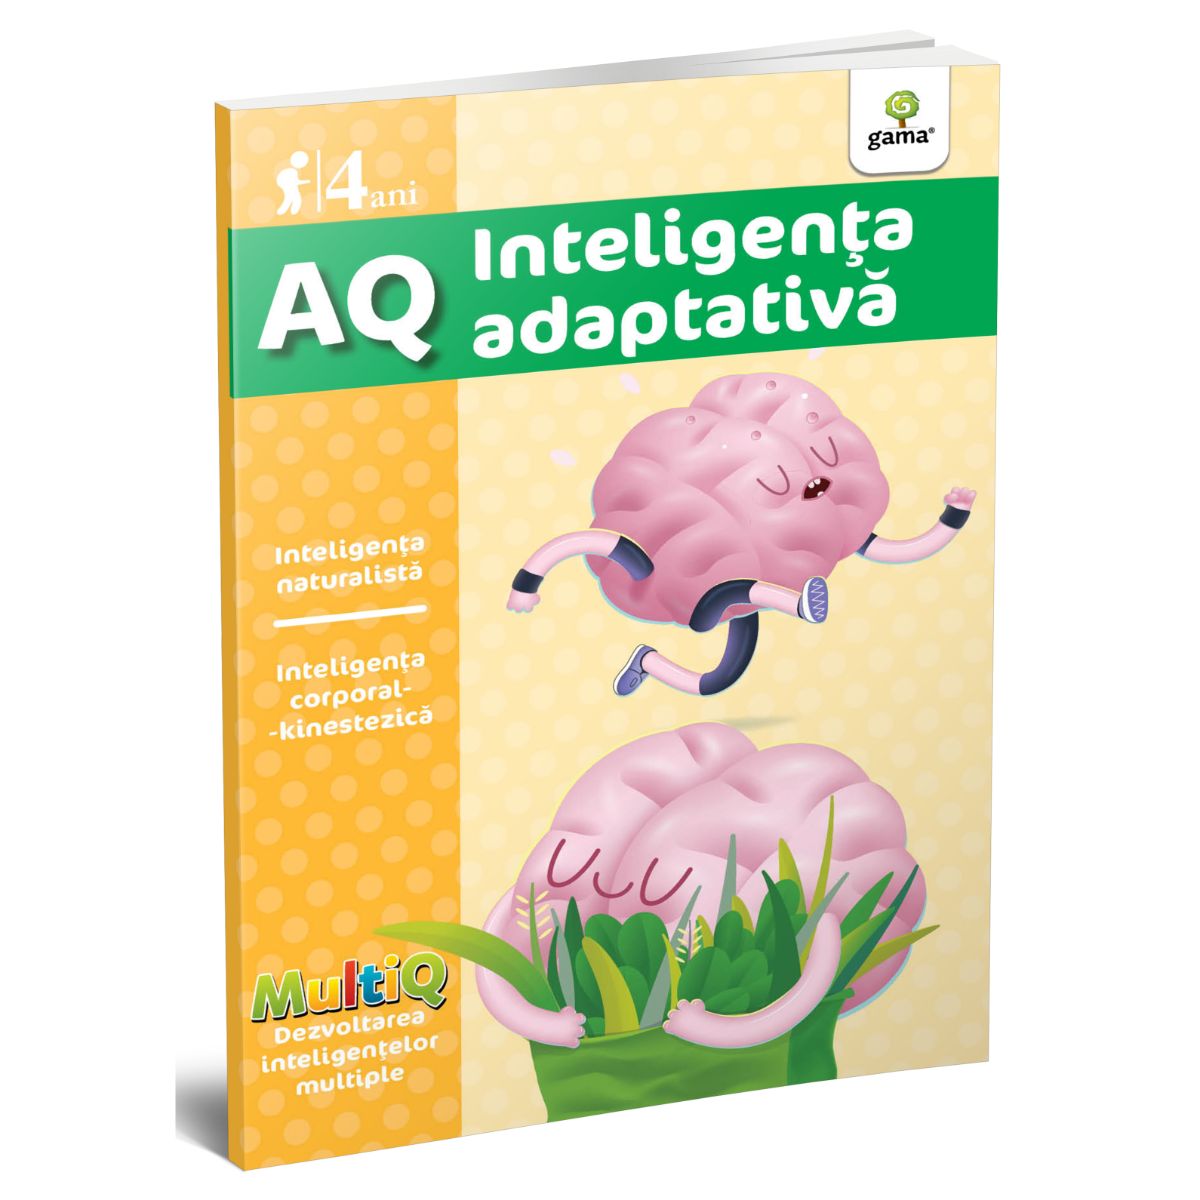 AQ. Inteligenta adaptiva, 4 ani, MultiQ adaptiva